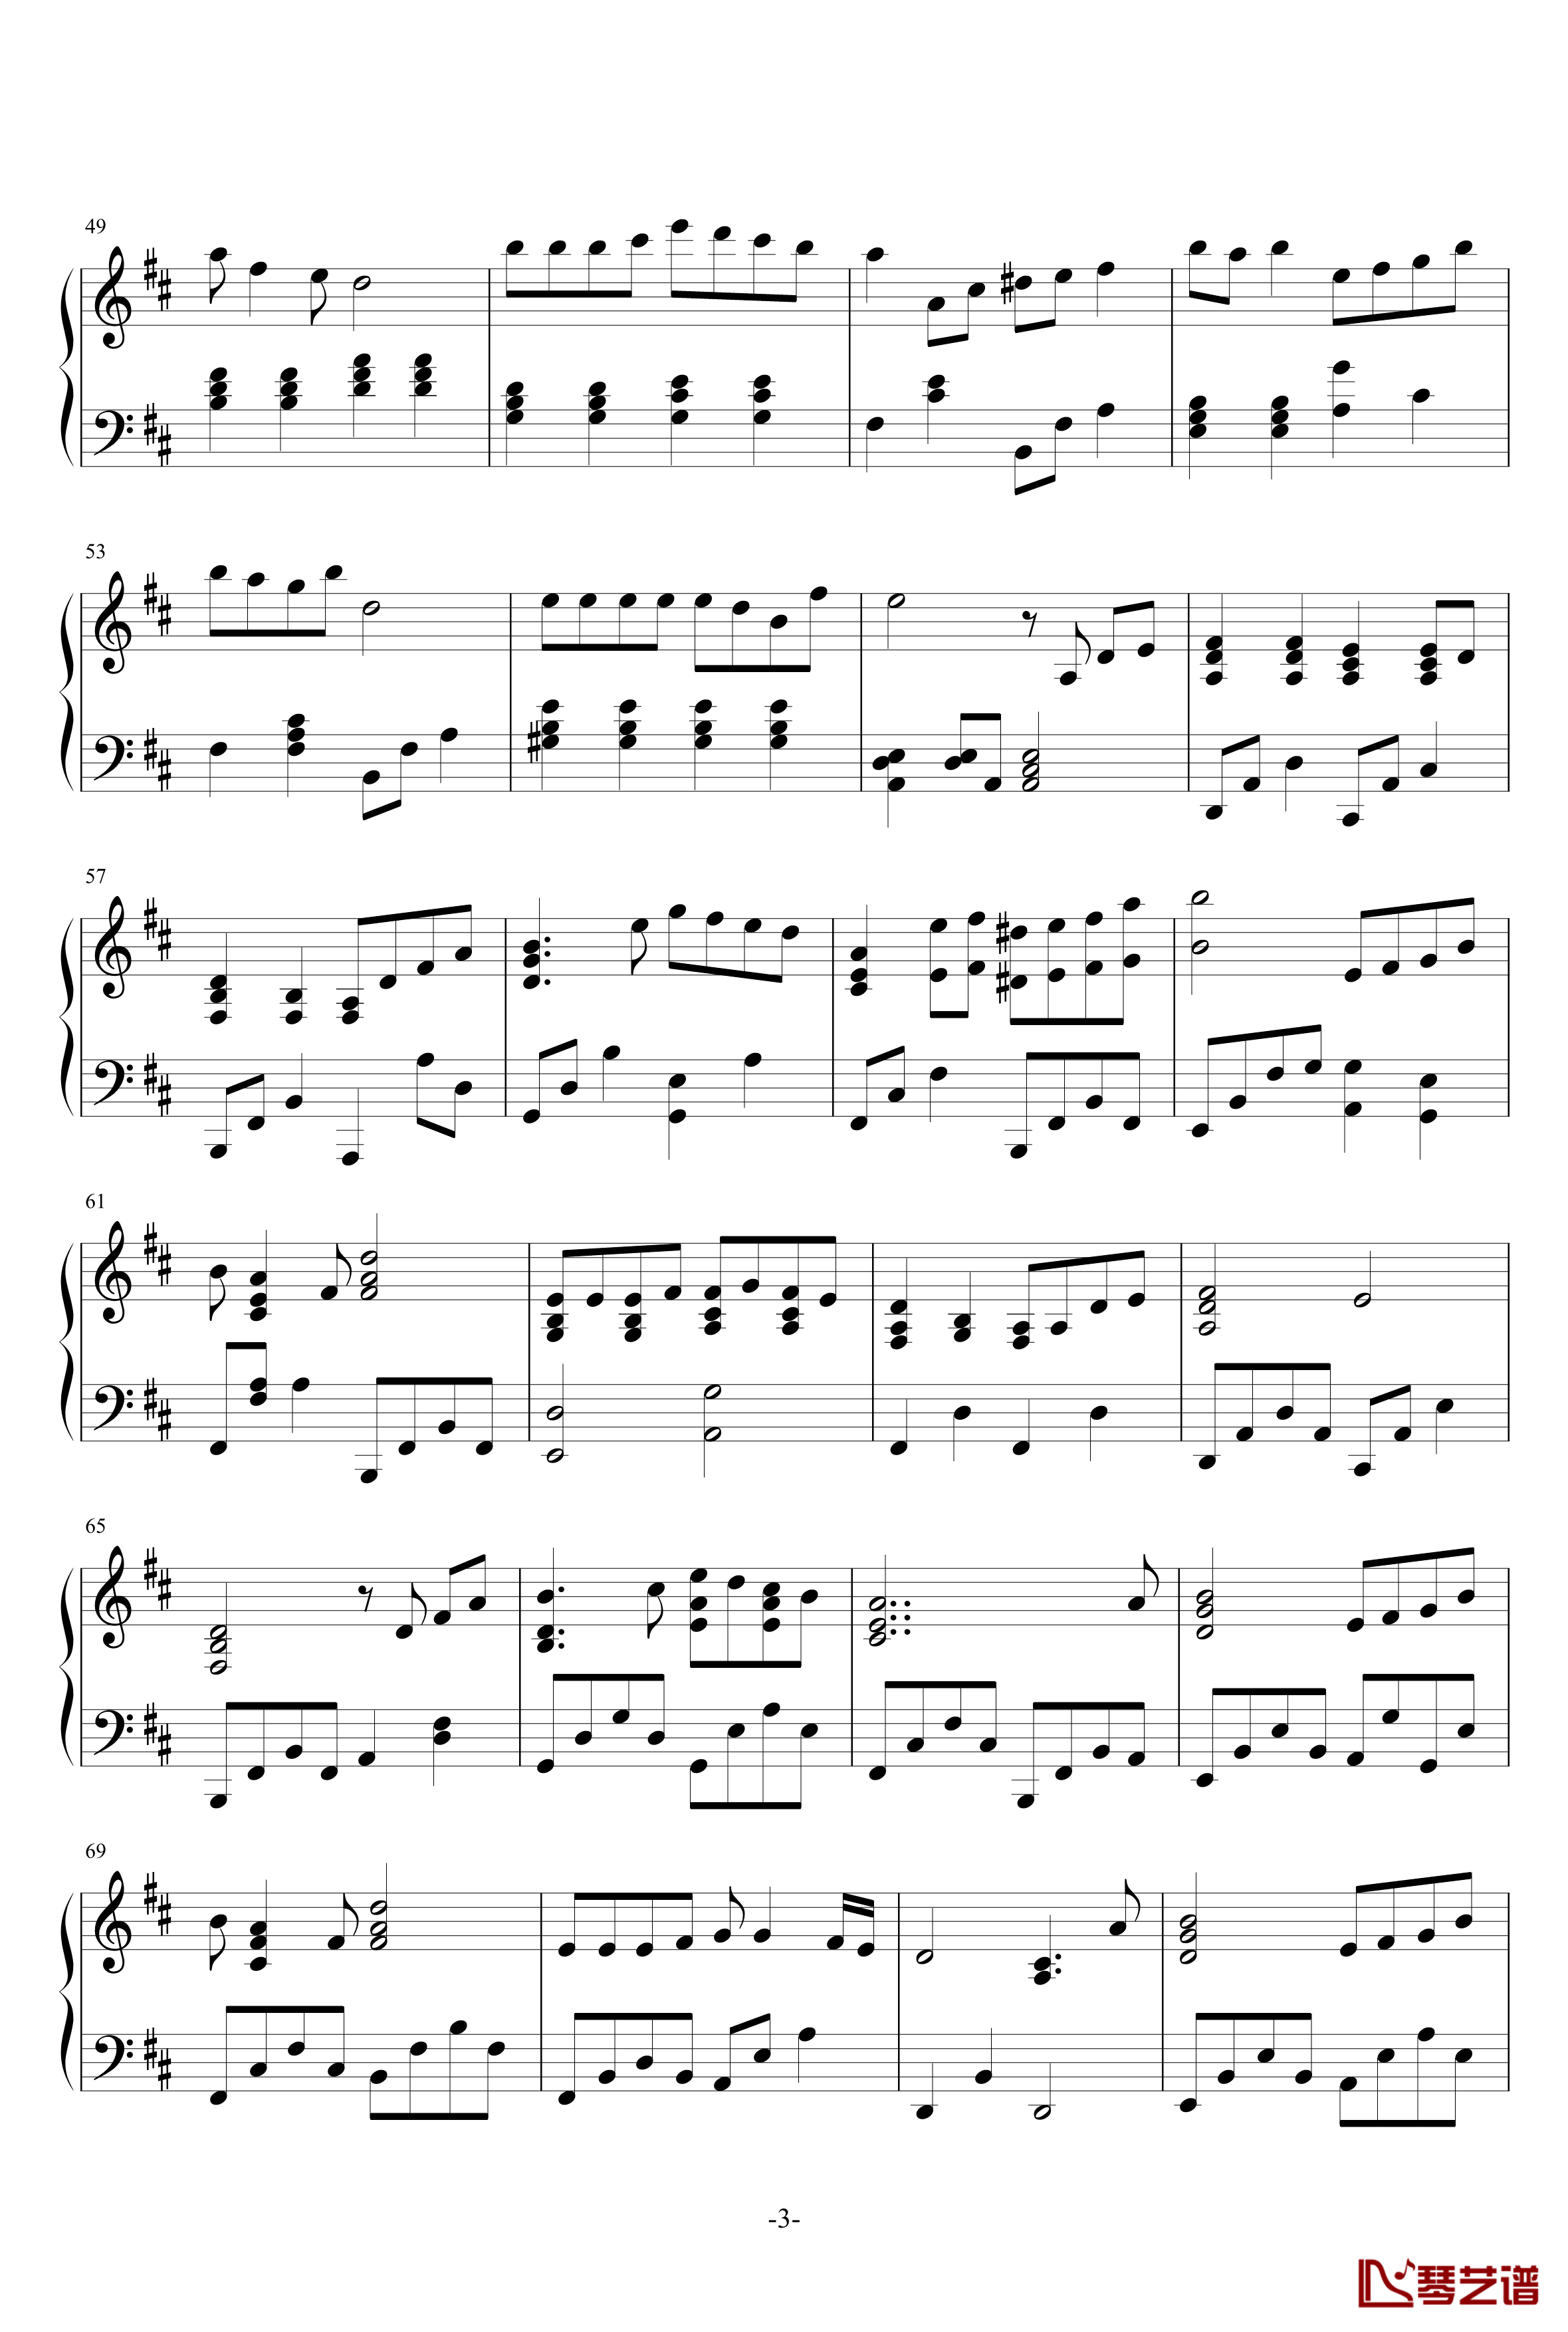 幻化千风钢琴谱-钢琴伴奏部分-银魂3